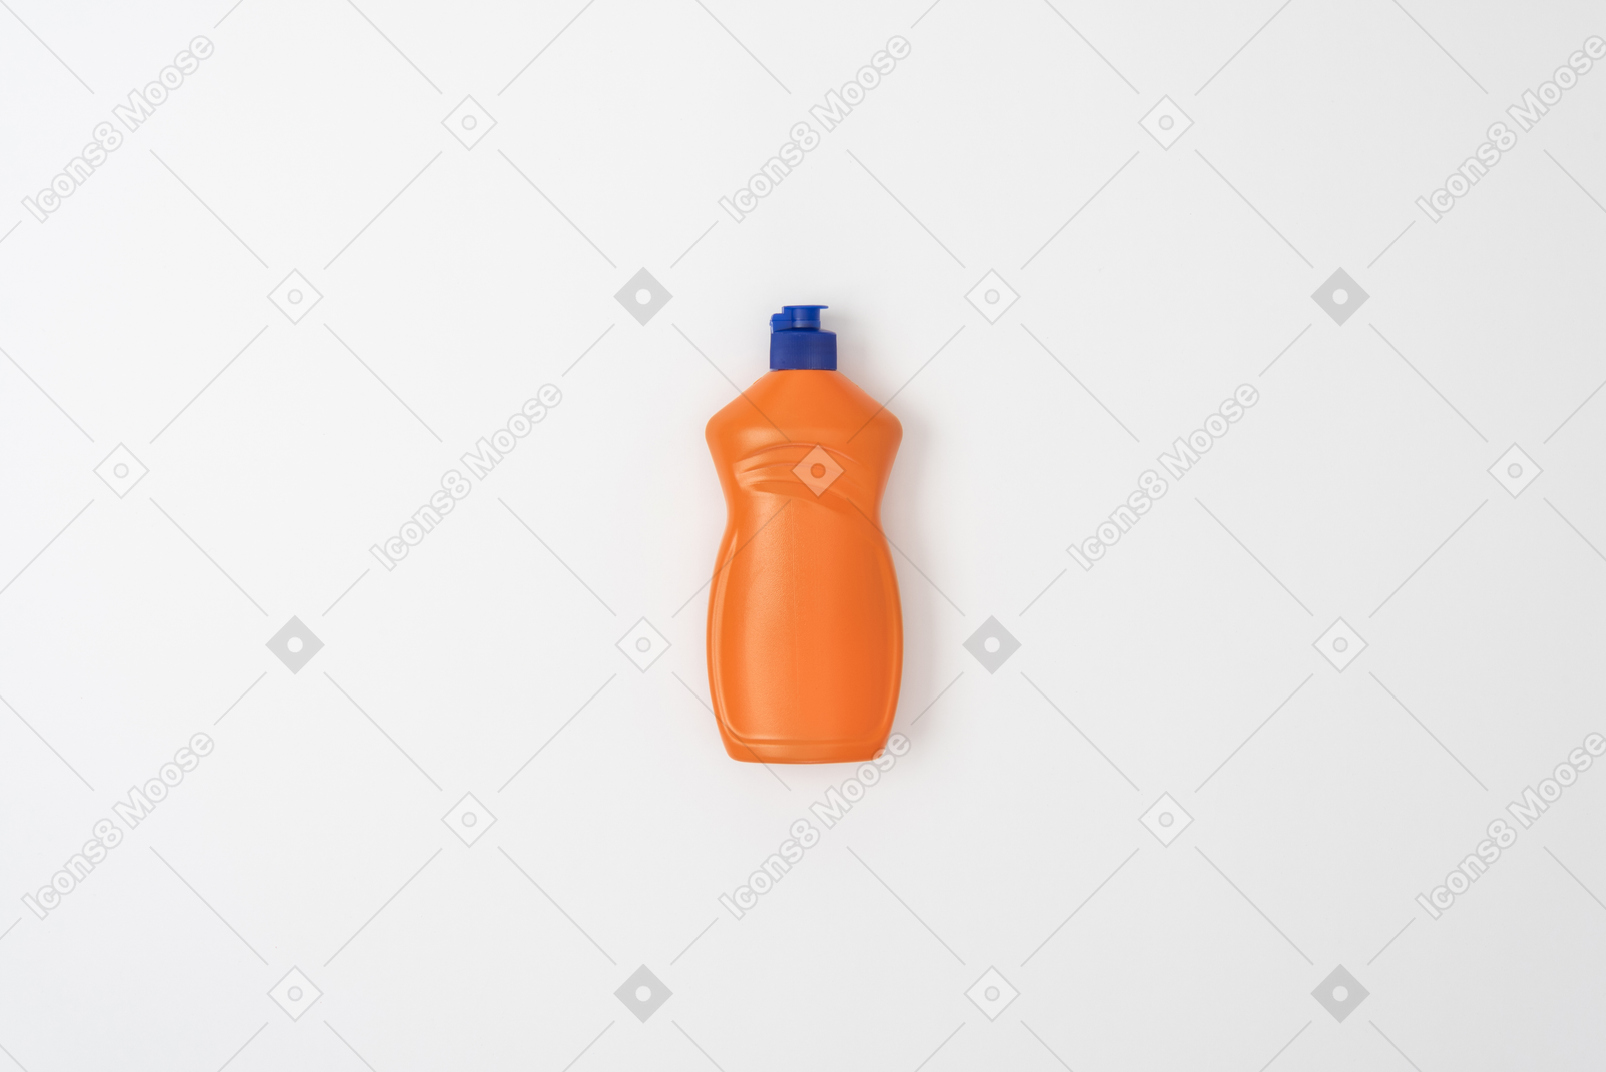 Dishwashing bottle mockup